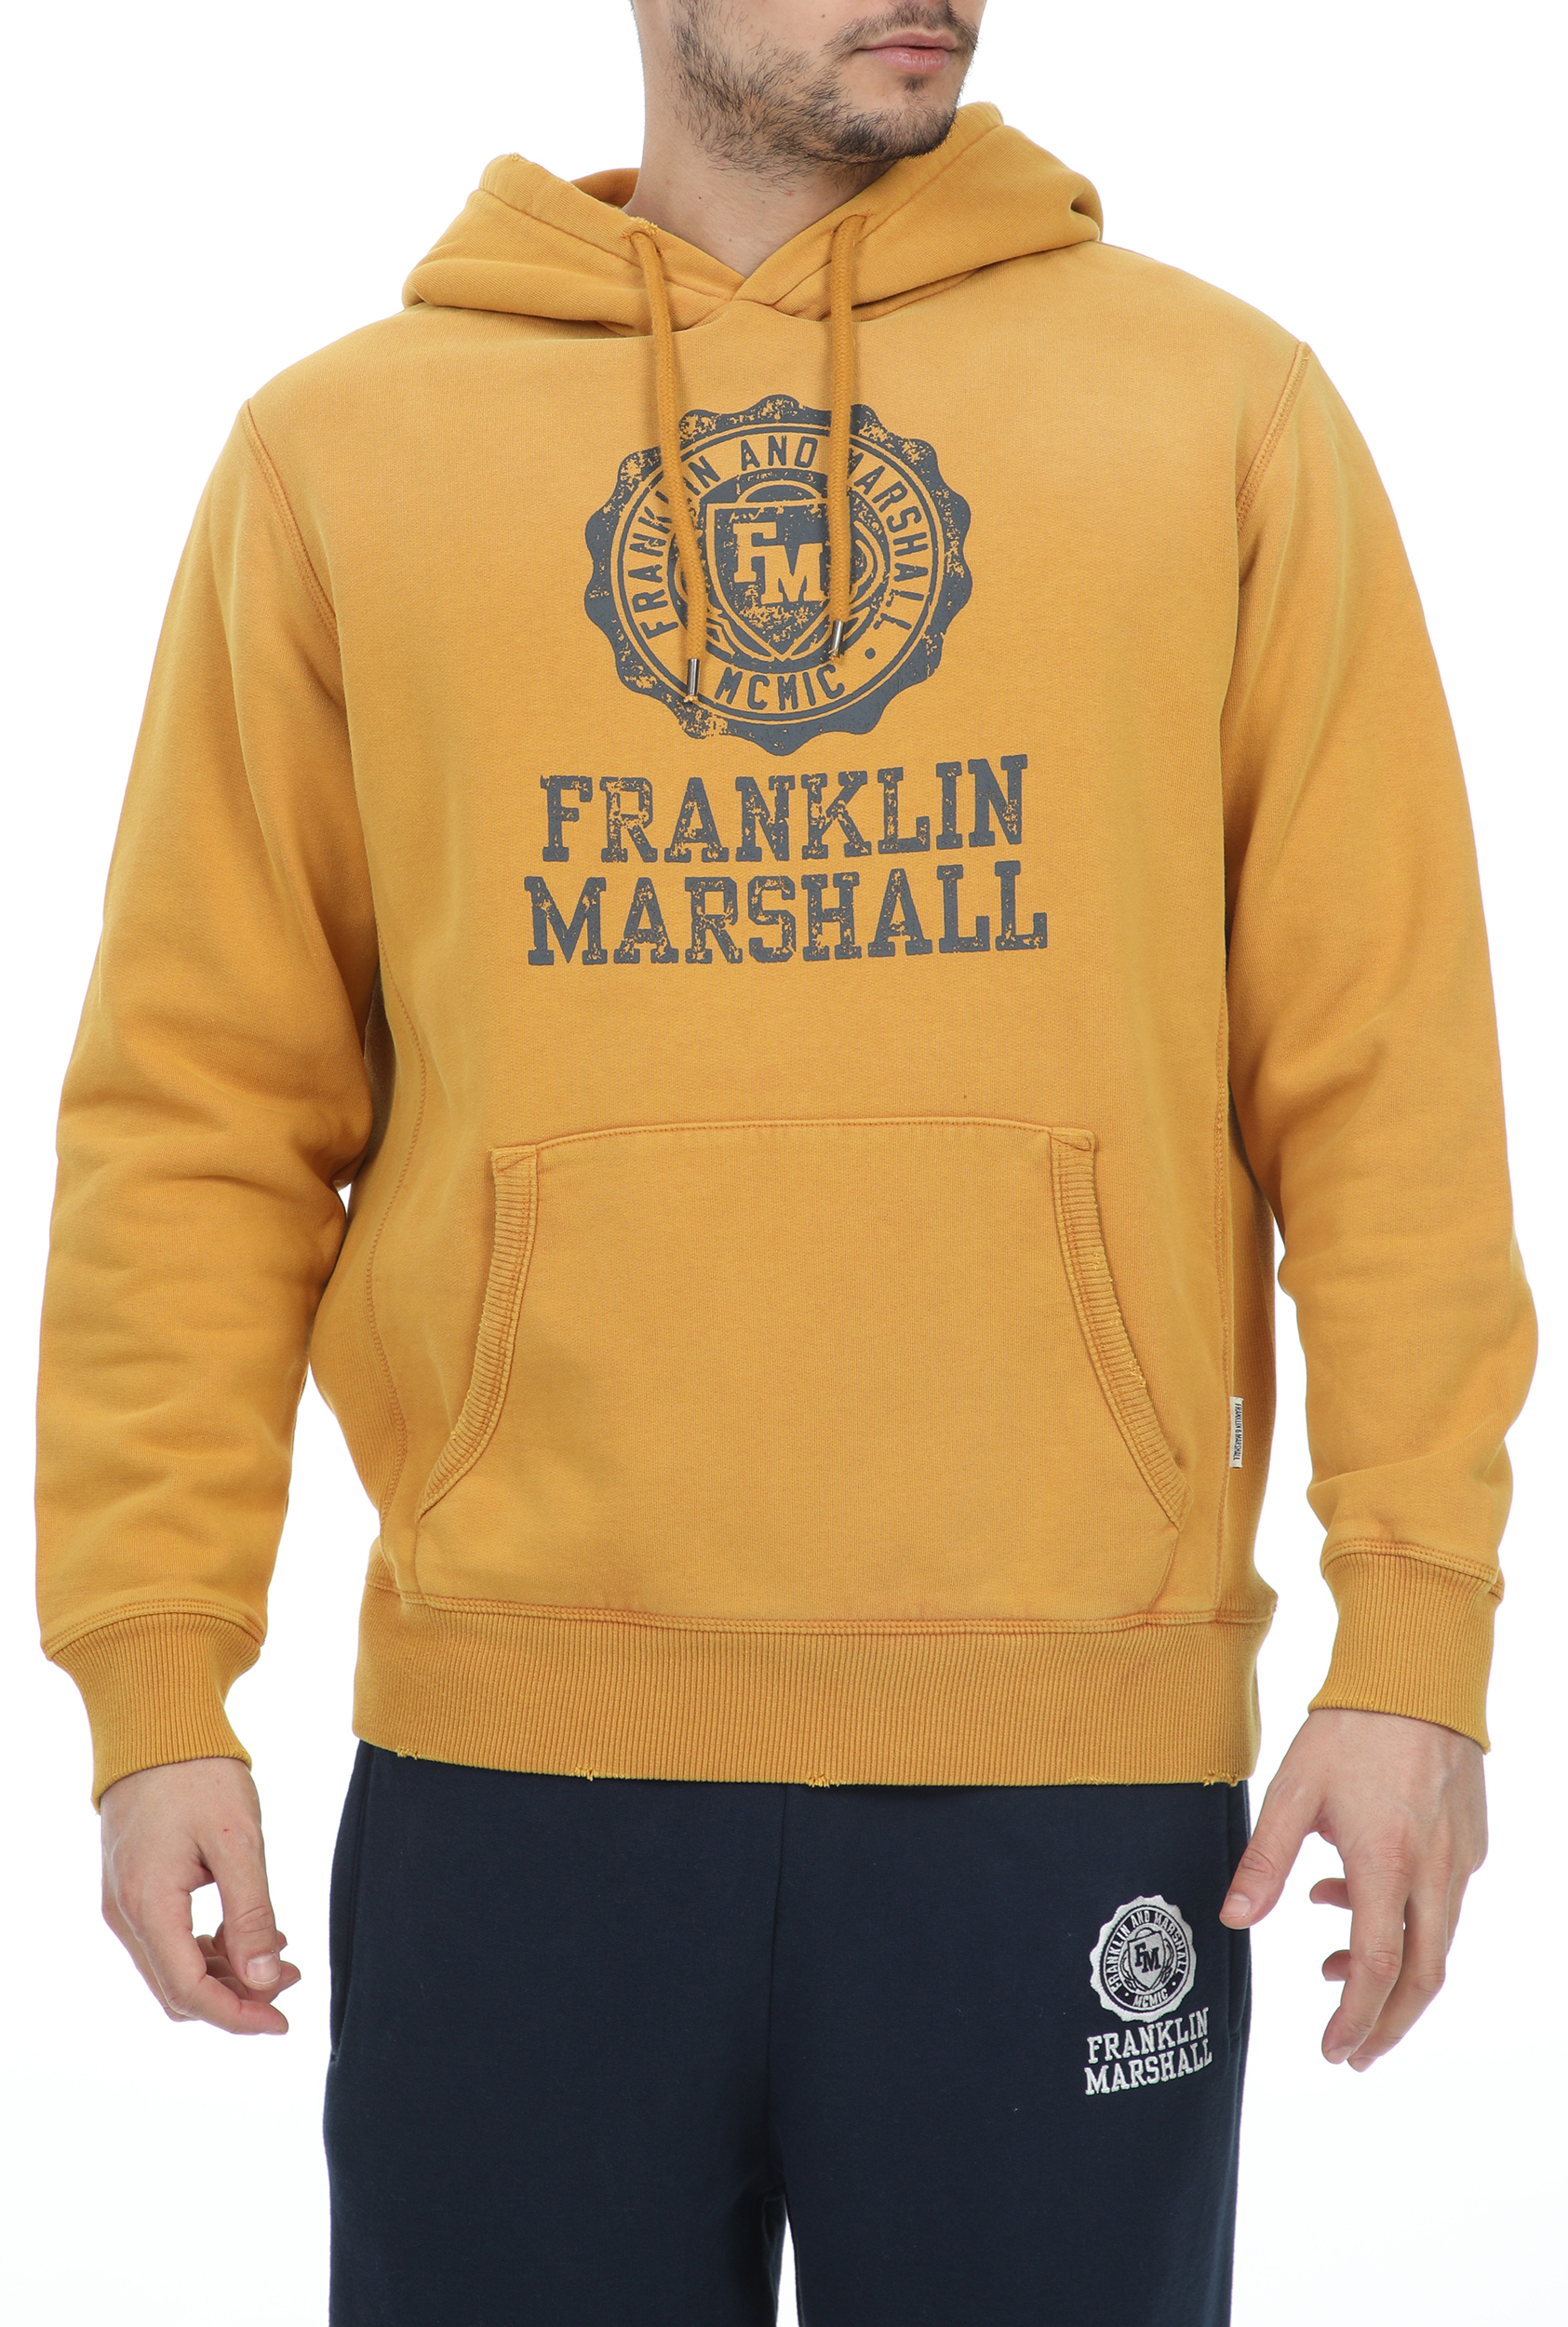 Ανδρικά/Ρούχα/Φούτερ/Μπλούζες FRANKLIN & MARSHALL - Ανδρική φούτερ μπλούζα FRANKLIN & MARSHALL SUPER VINTAGE G.DYE κίτρινη